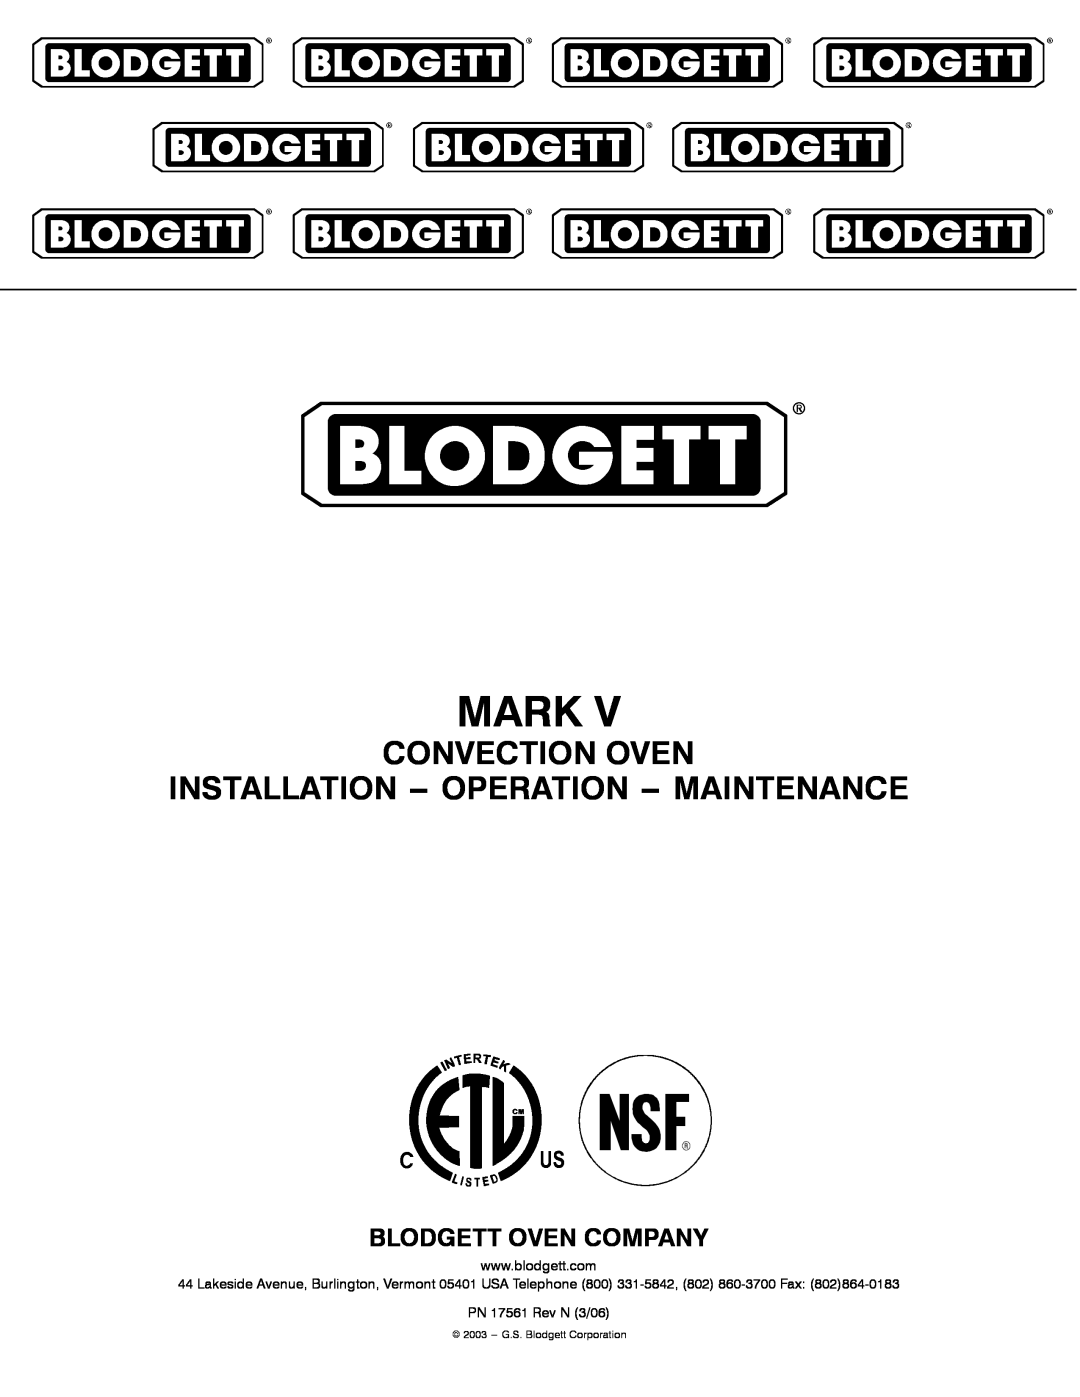 Blodgett MARK V manual Mark, Convection Oven Installation -- Operation -- Maintenance, PN 17561 Rev N 3/06 